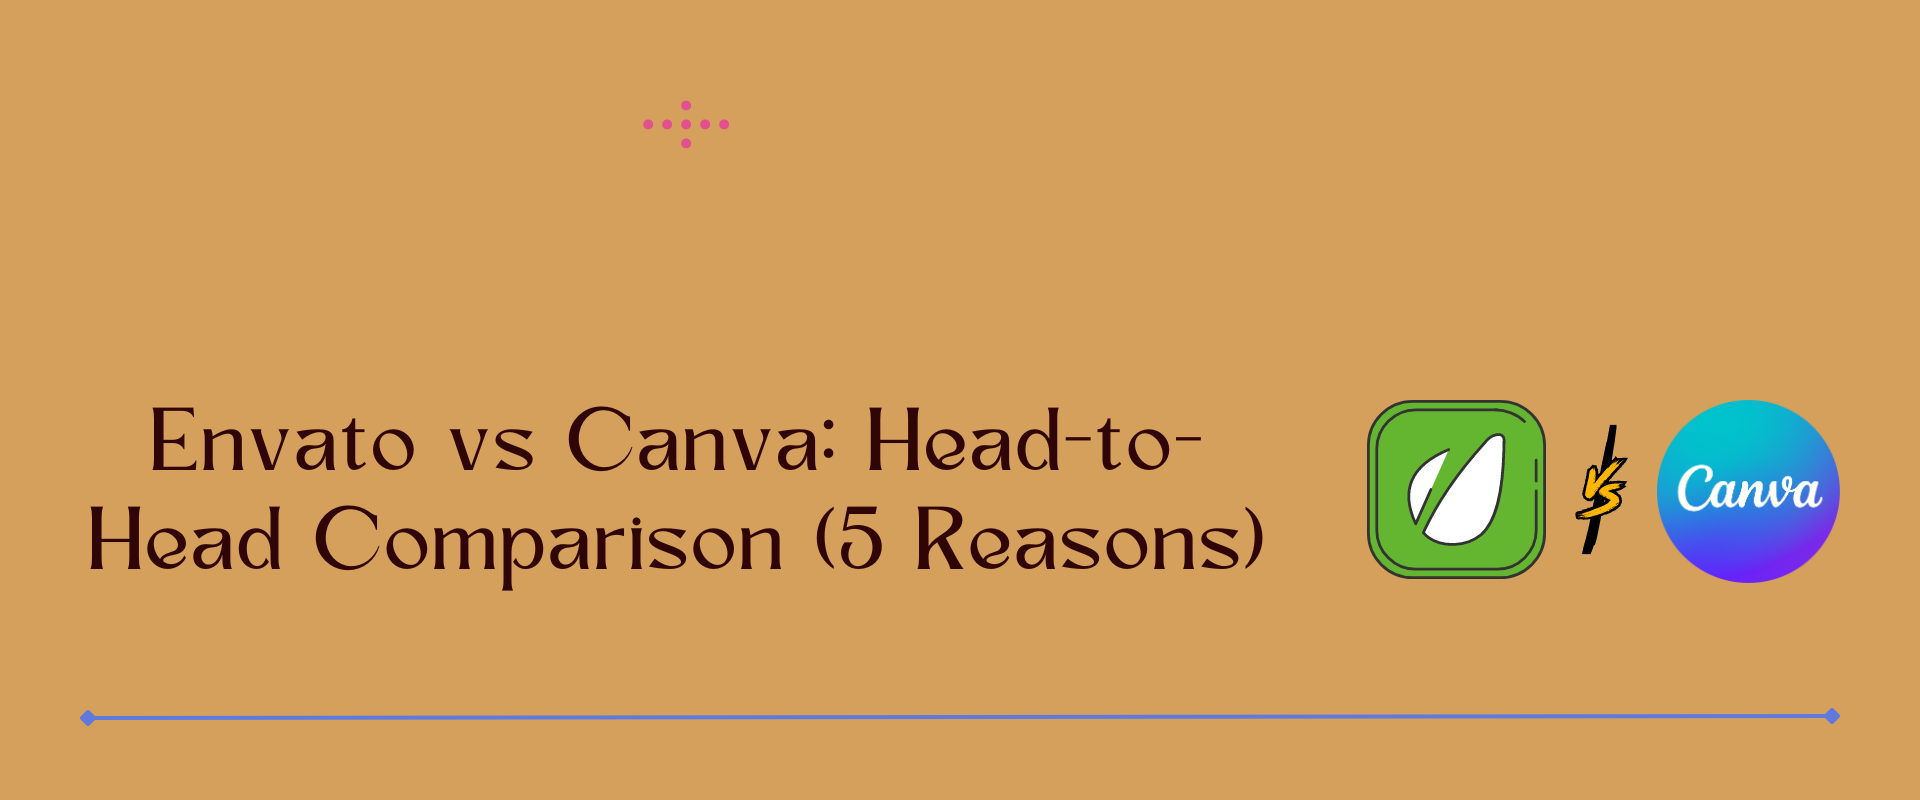 Envato vs Canva: Head-to-Head Comparison (Top 5 Reasons)